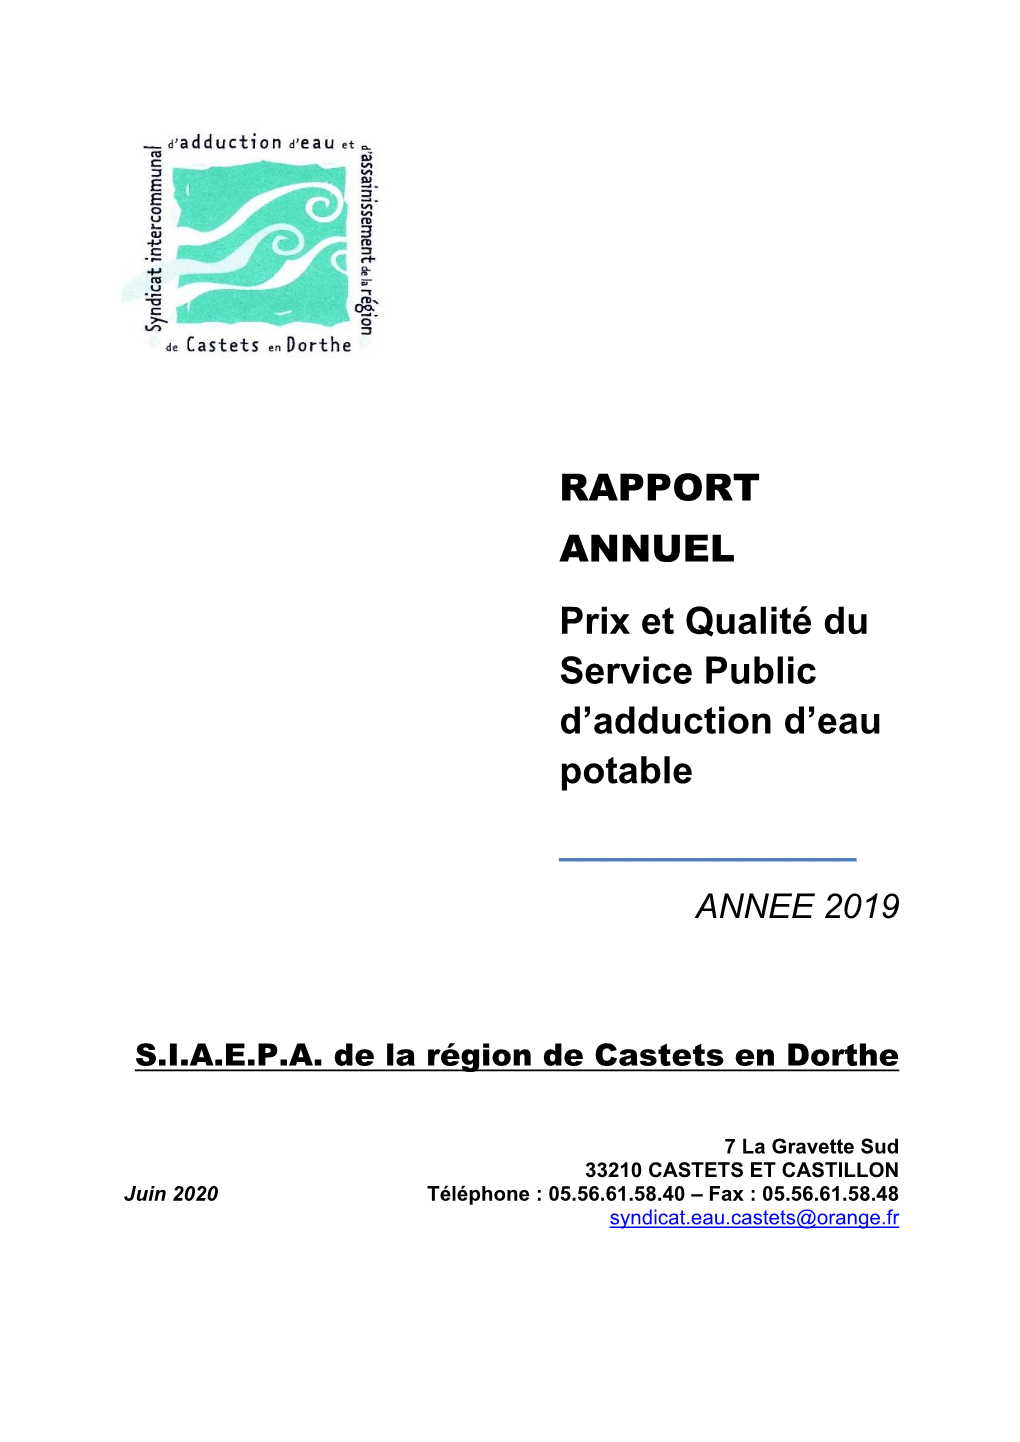 RAPPORT ANNUEL Prix Et Qualité Du Service Public D'adduction D'eau